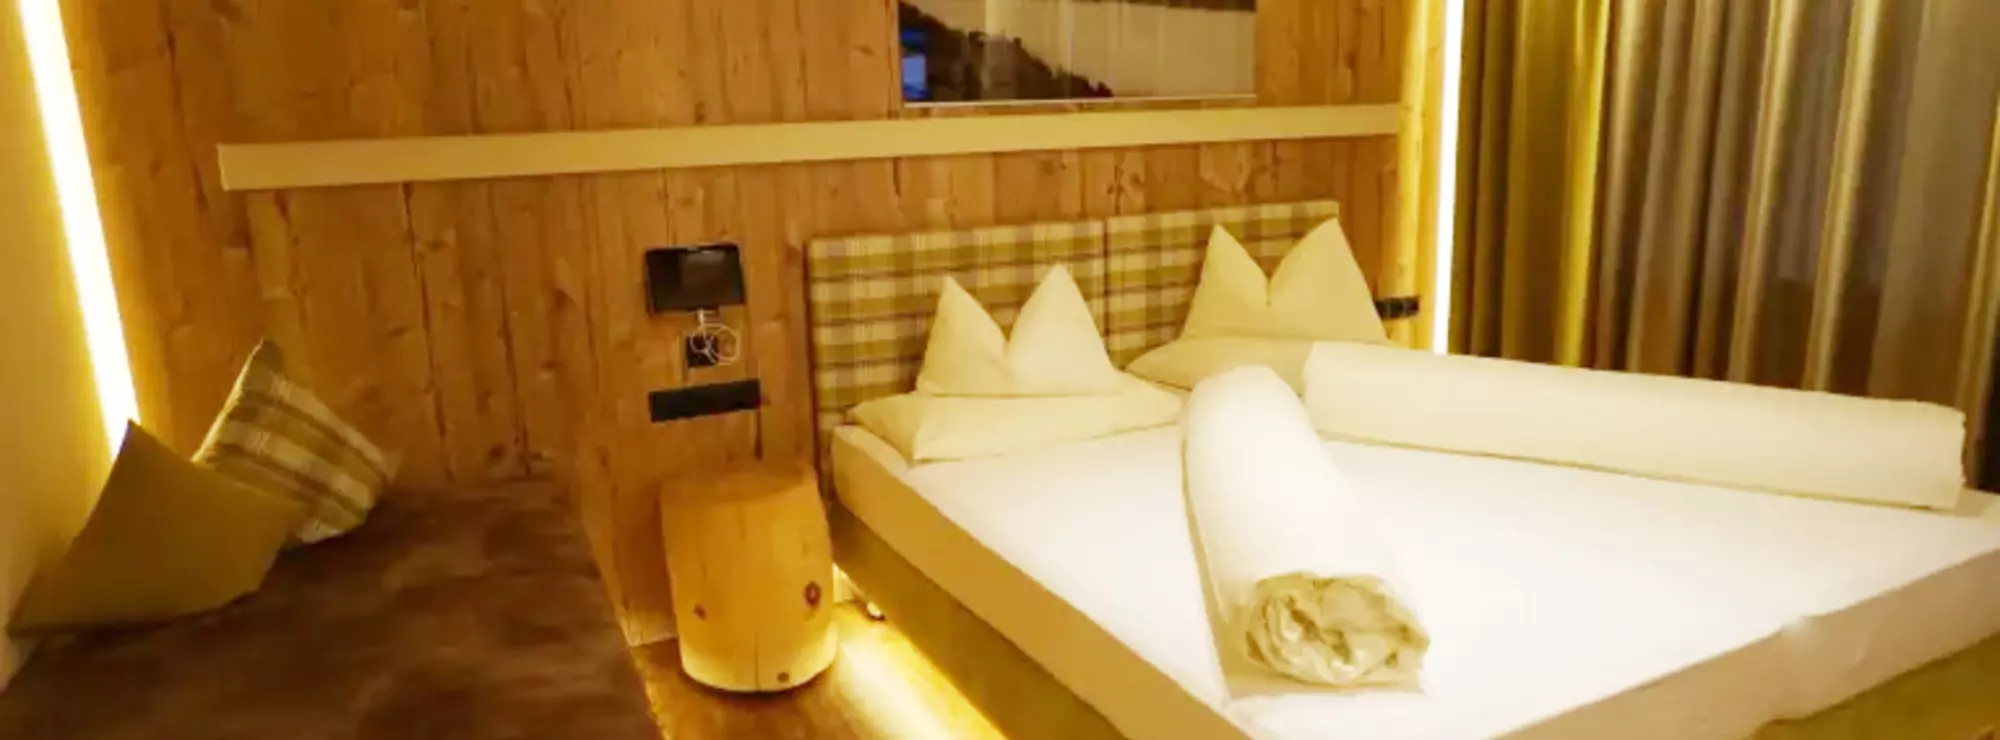 Schlafzimmer mit Wänden und Decke aus Holz und Zusatzbett